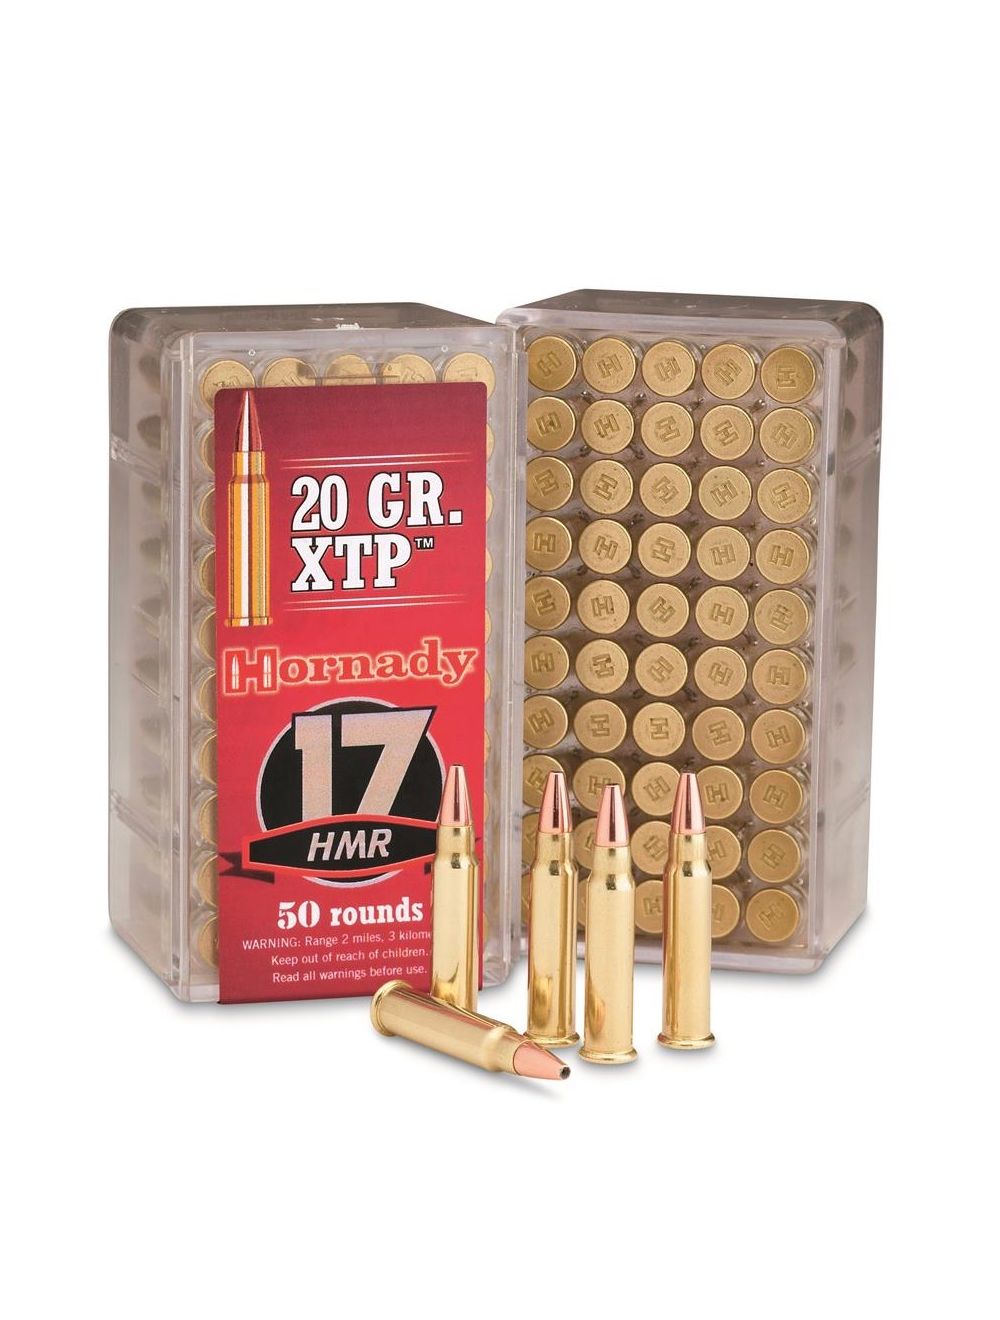 Hornady 17Hmr 20 Grain XTP Bullets